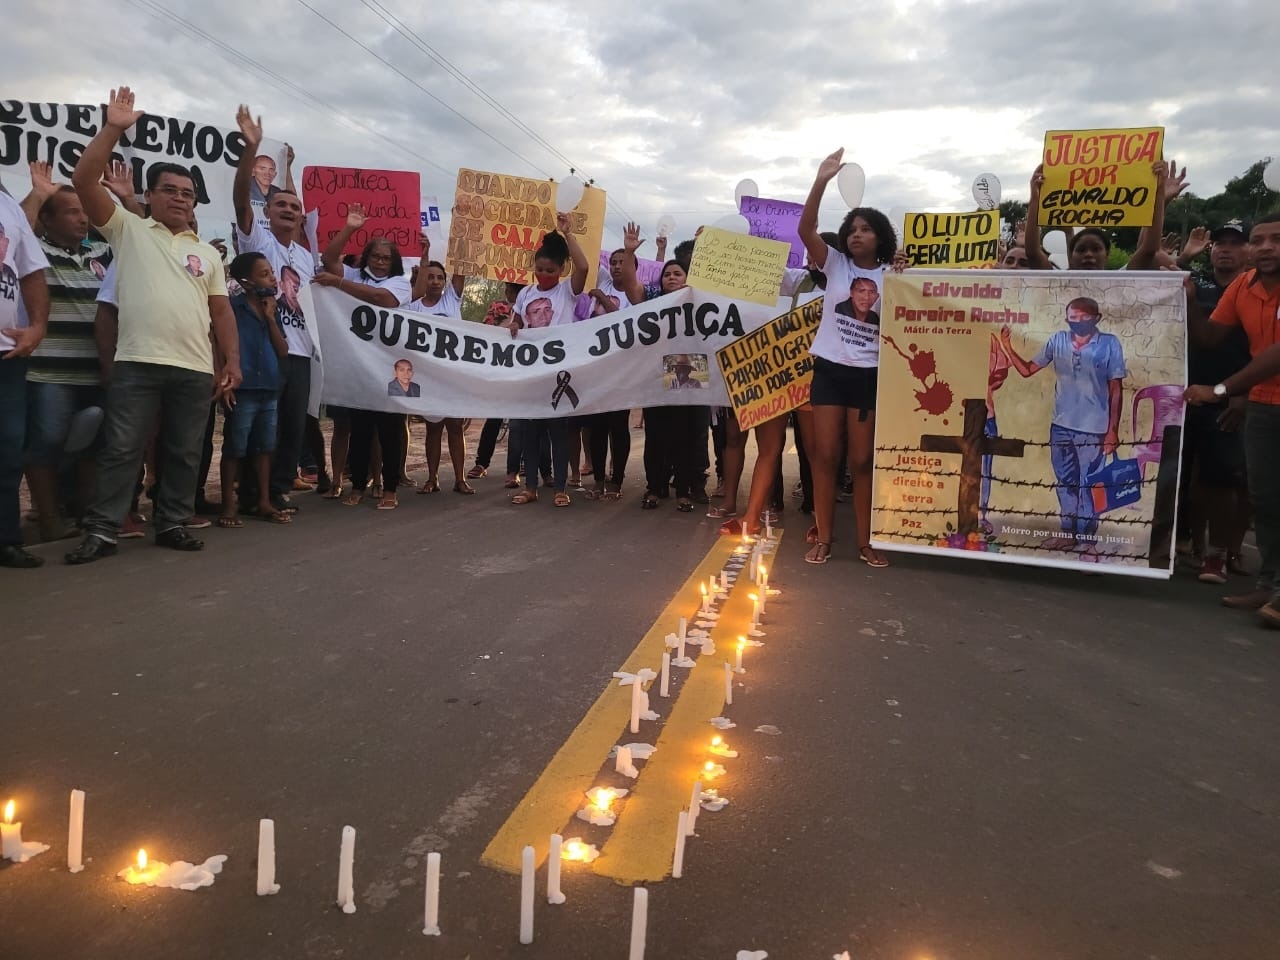 Manifestantes protestam contra a morte do líder quilombola, Edvaldo Pereira, no Maranhã. Foto João Paulo Guimarães